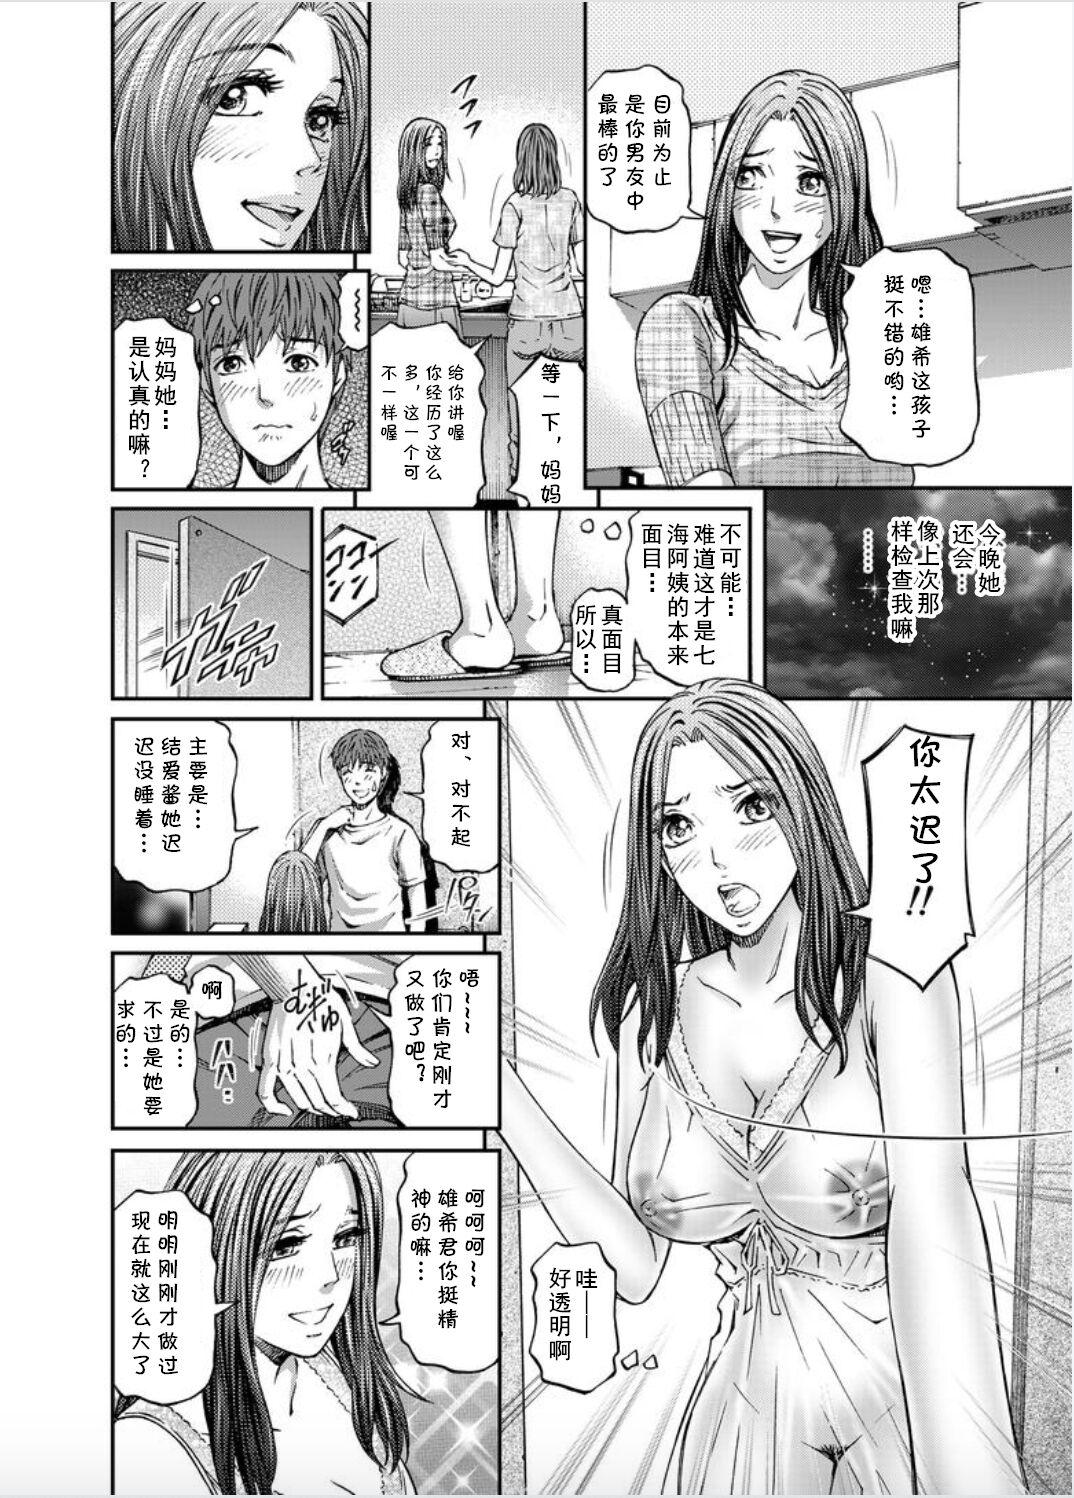 Stretching Onna-tachi ga Iku Toki... Ero Drama Vol. 8 Datte, Kanojo no Haha ga... Oral - Page 8